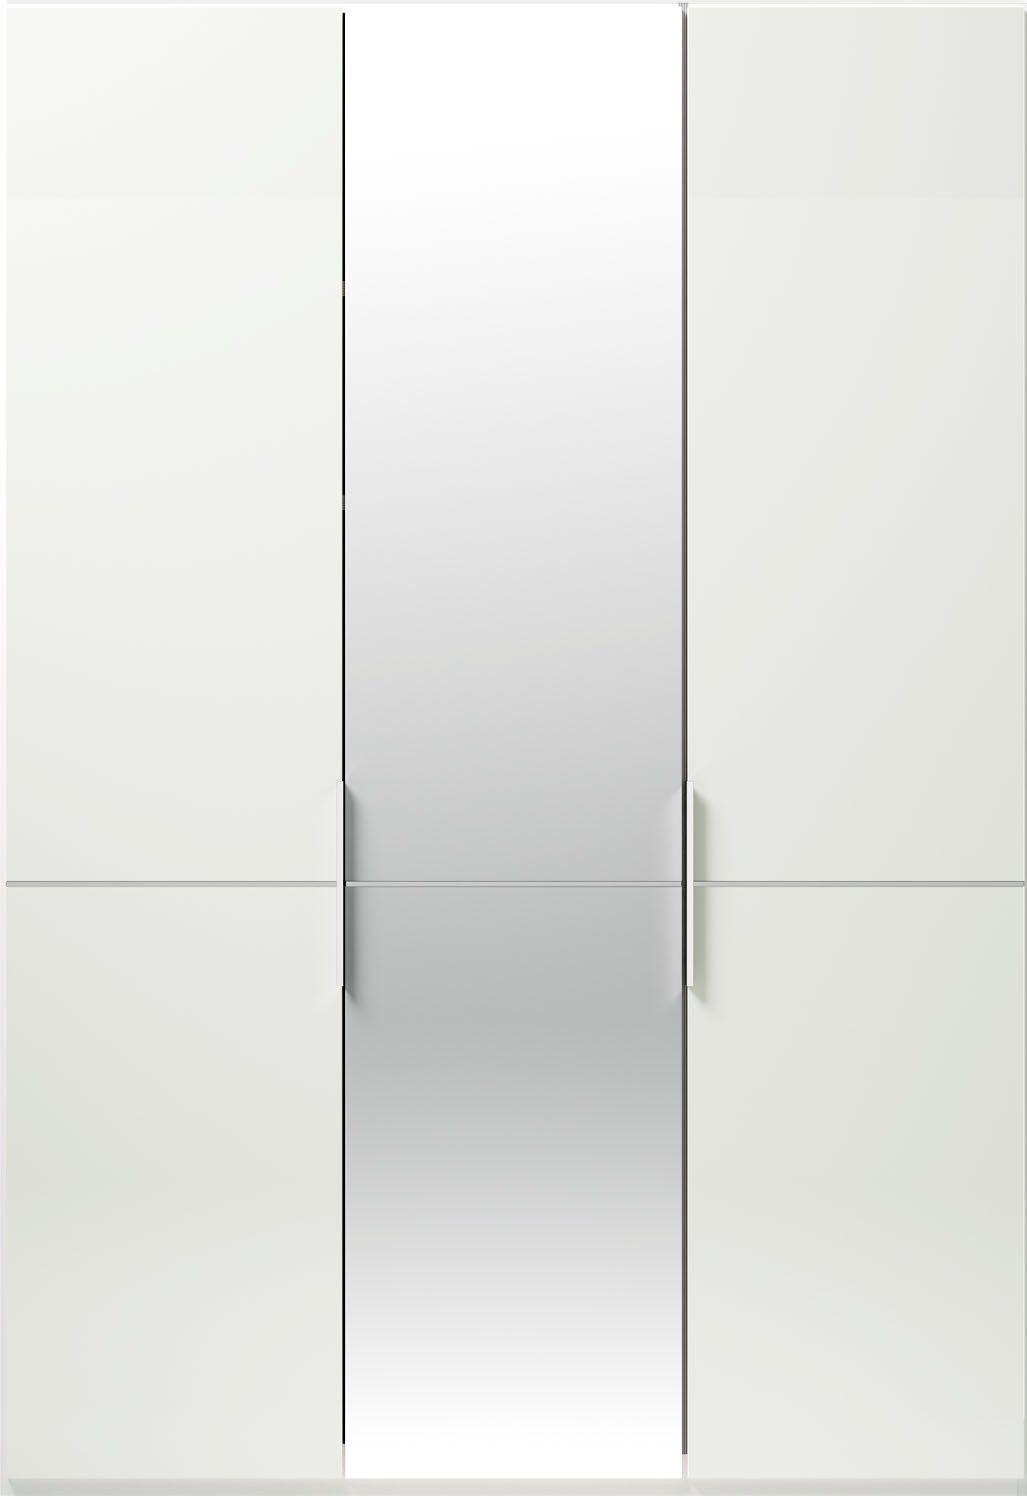 GALLERY M und Kleiderstangen, W Drehtürenschrank Glas- und Musterring mit Weiß by Spiegeltüren branded Einlegeböden inkl. Imola